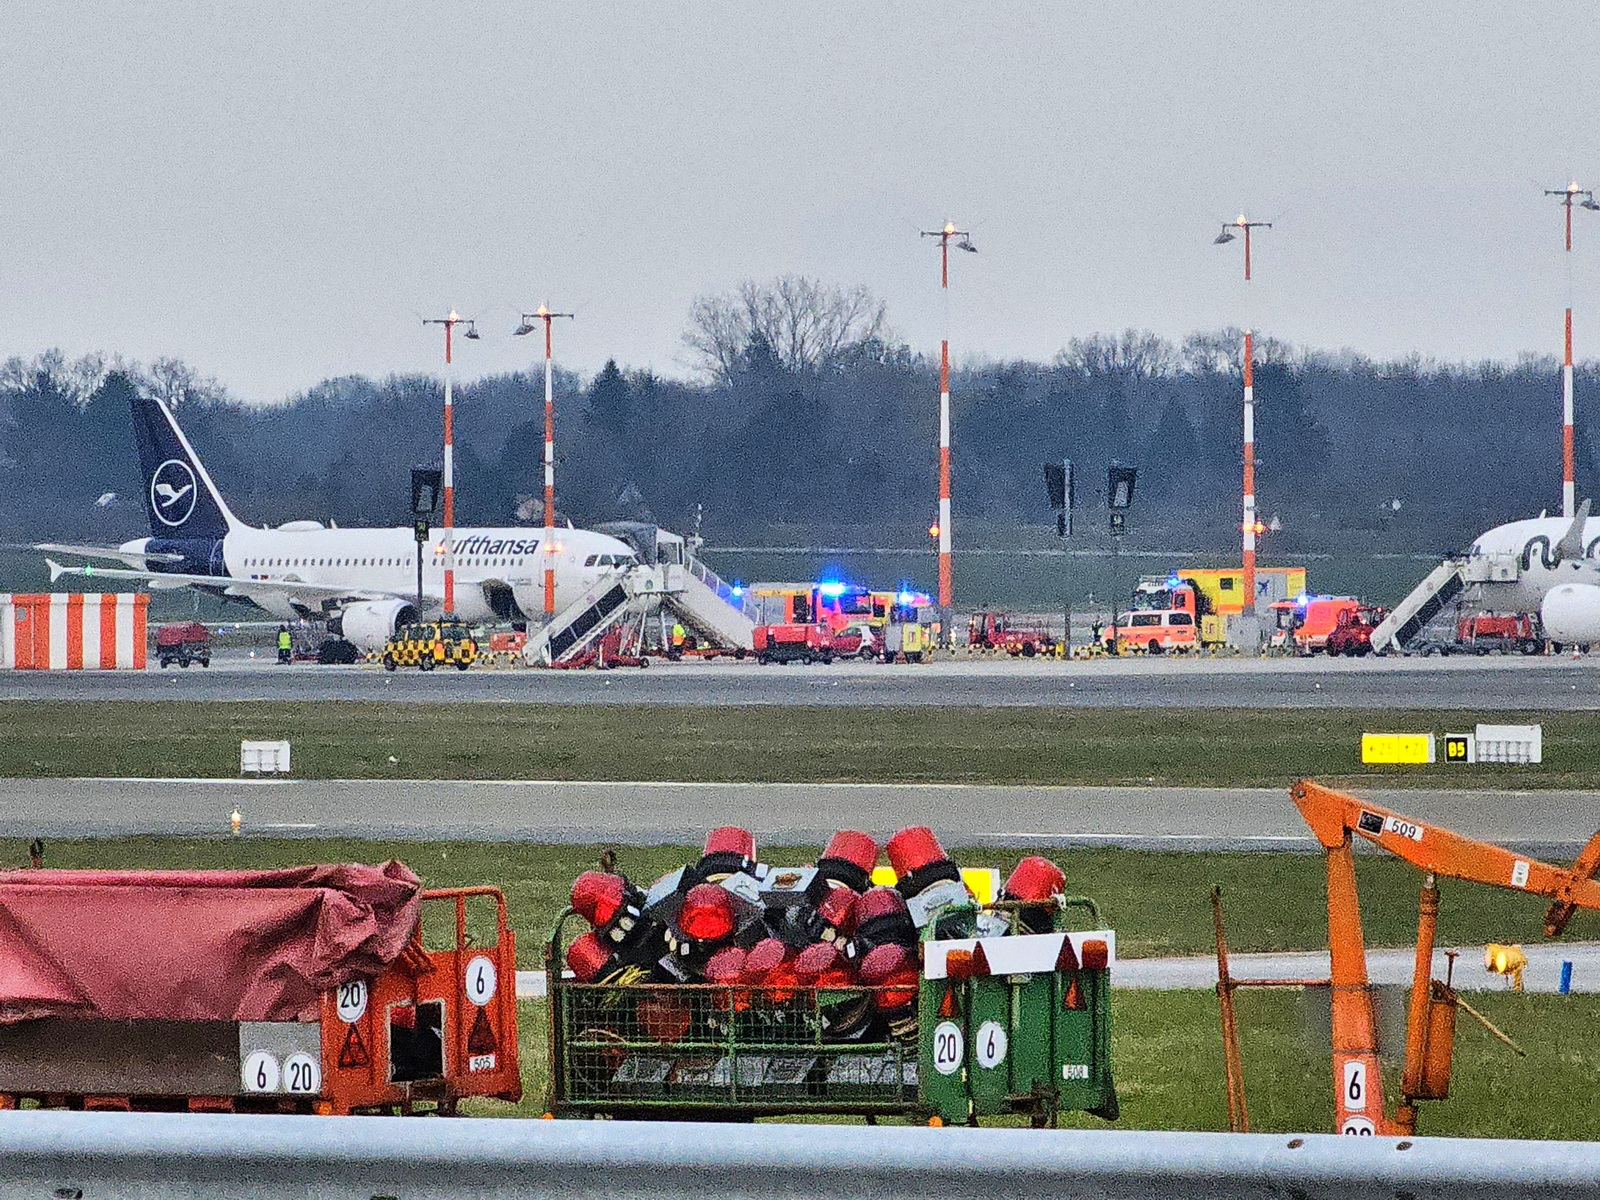 Am Flughafen ist ein der Distanz ein Flugzeug und mehrere Rettungswagen der Feuerwehr zu sehen